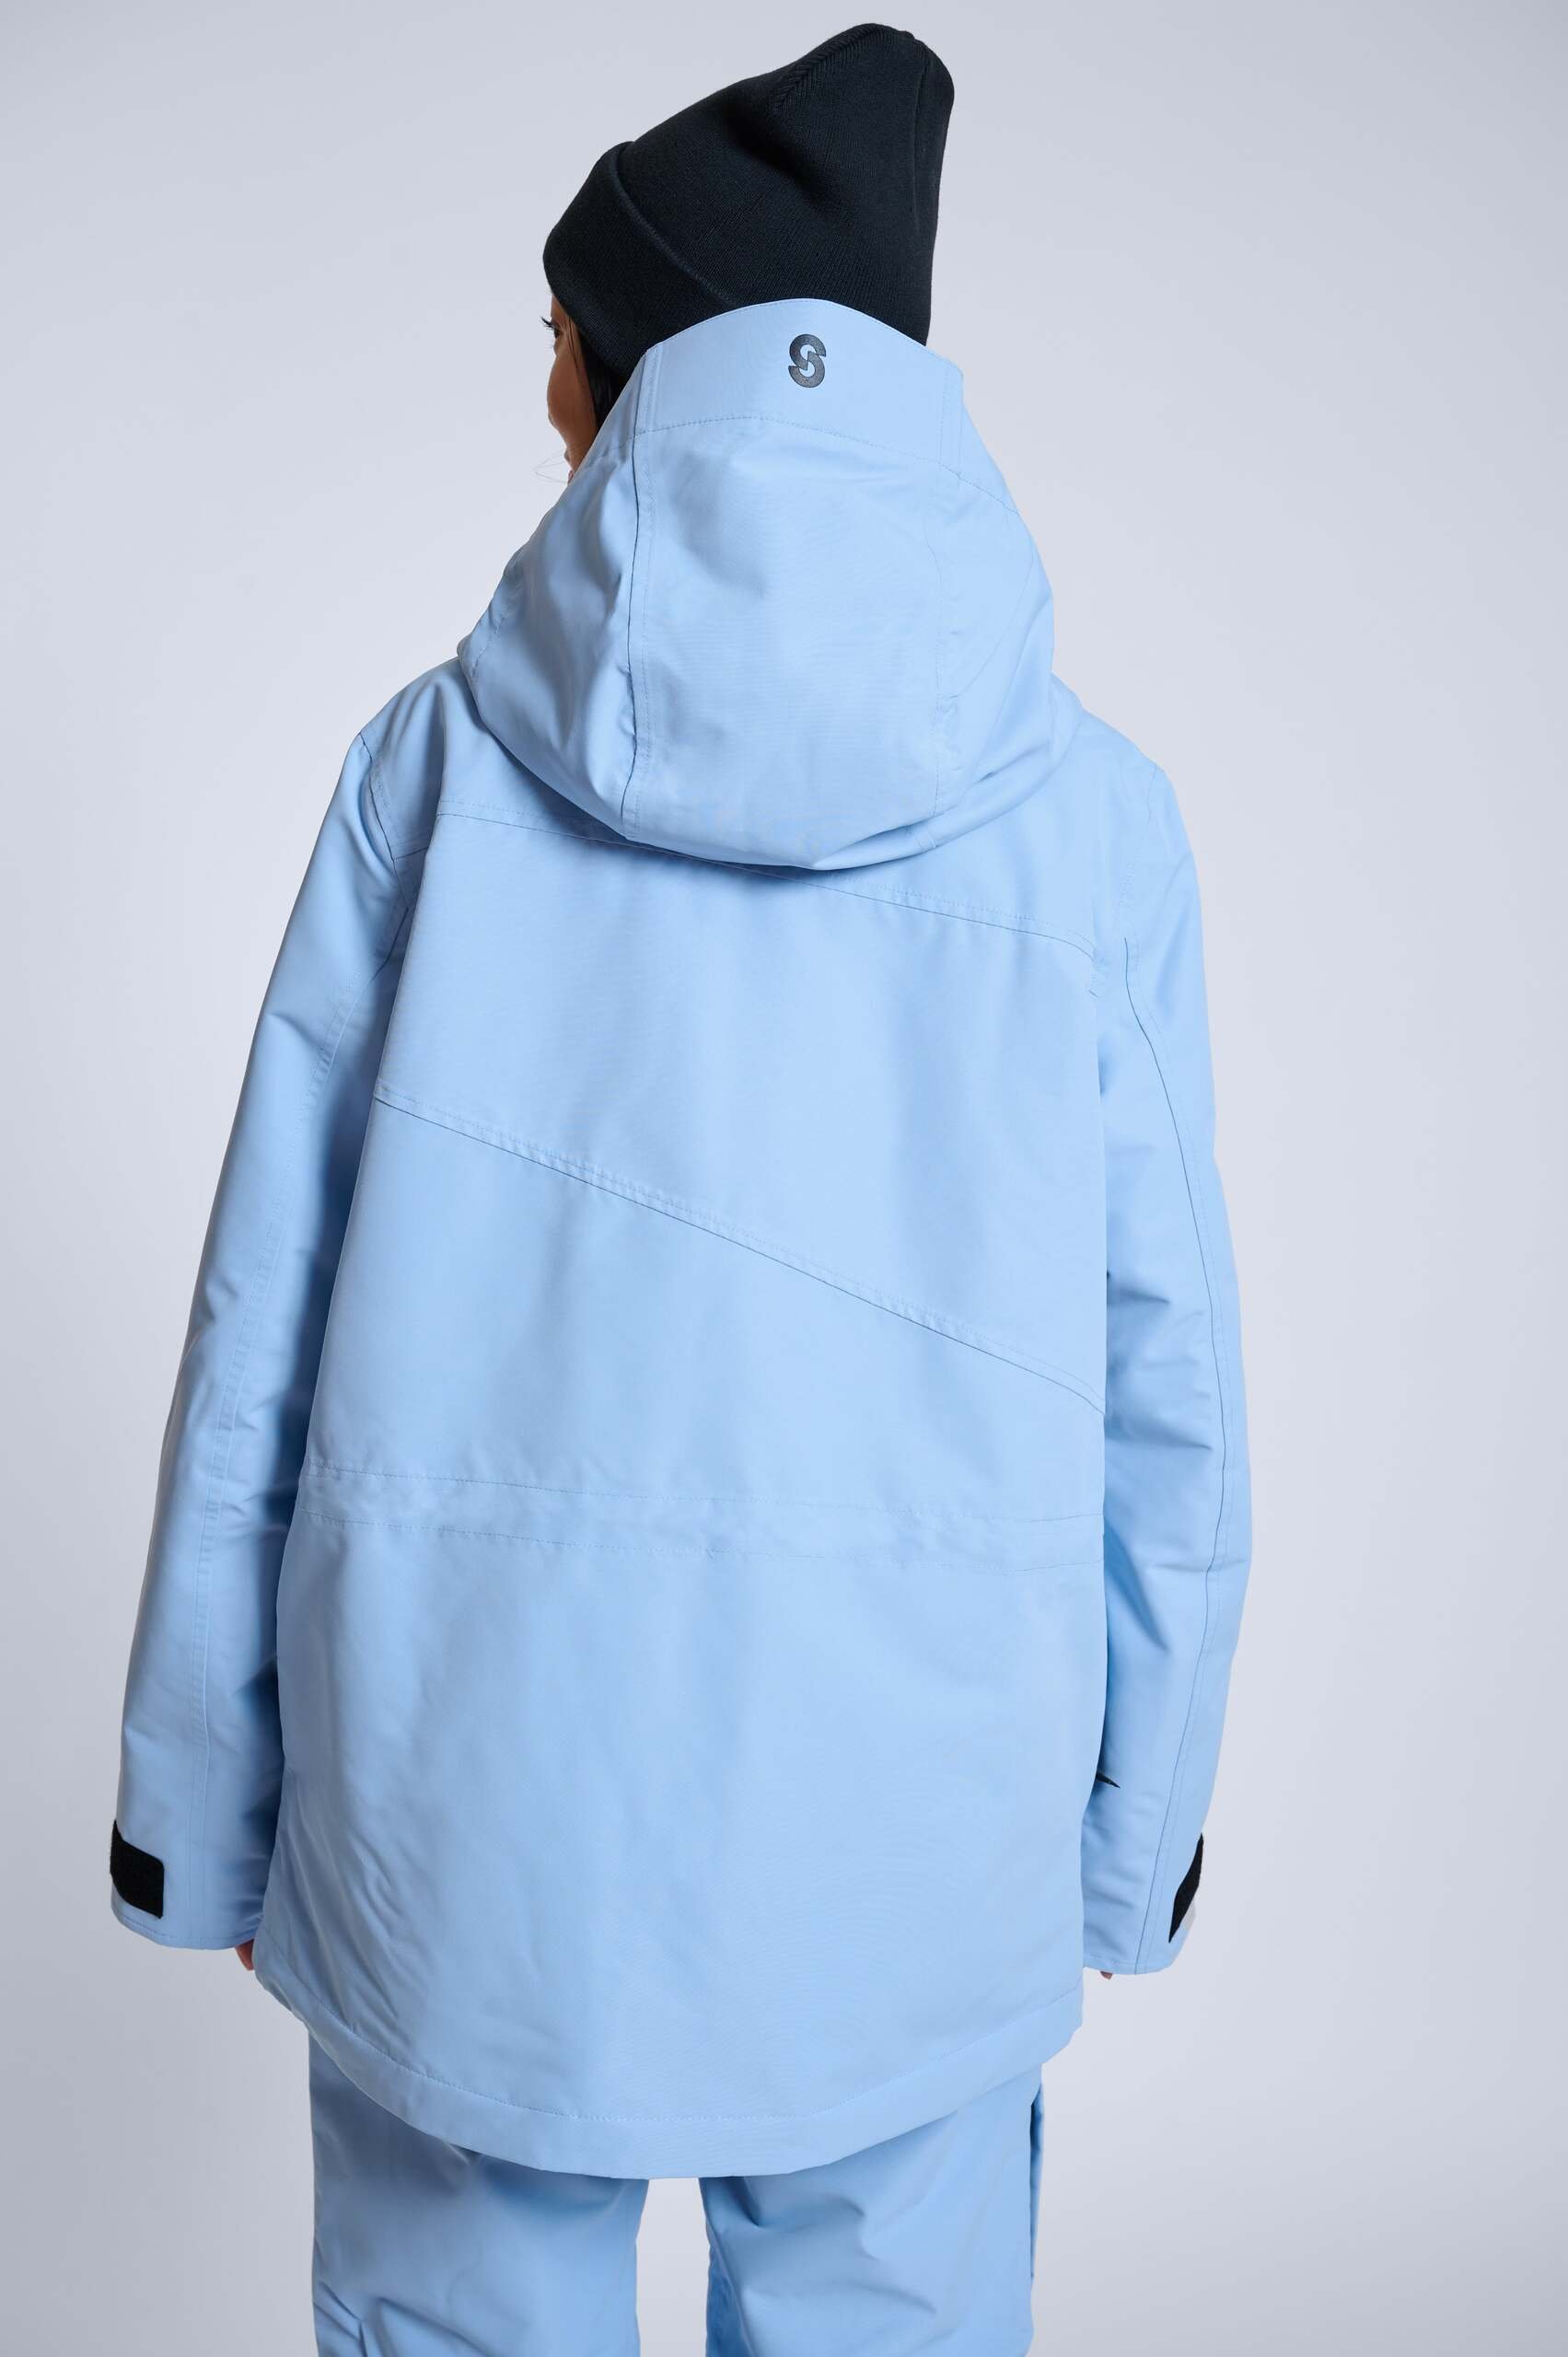 aura-blue-jacket-031-min.jpg